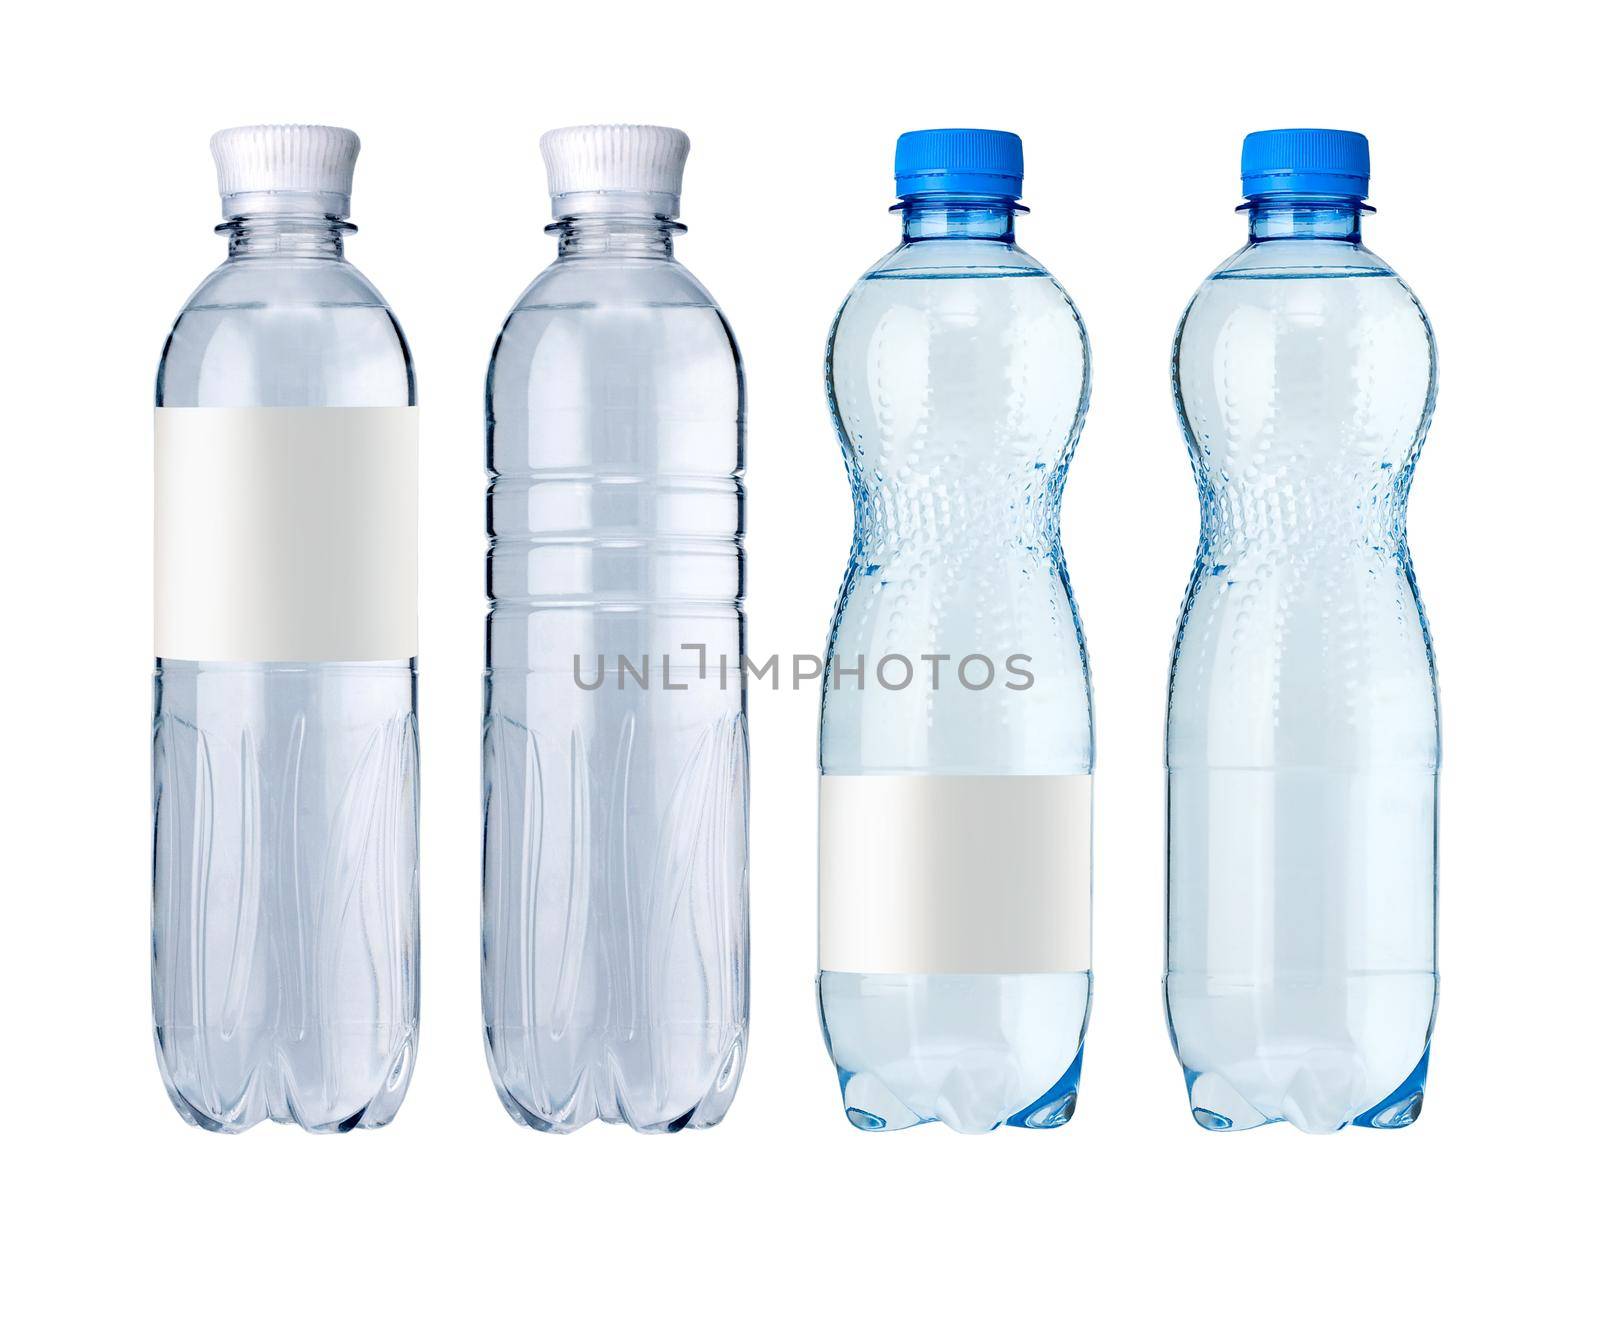 water bottles by kornienko